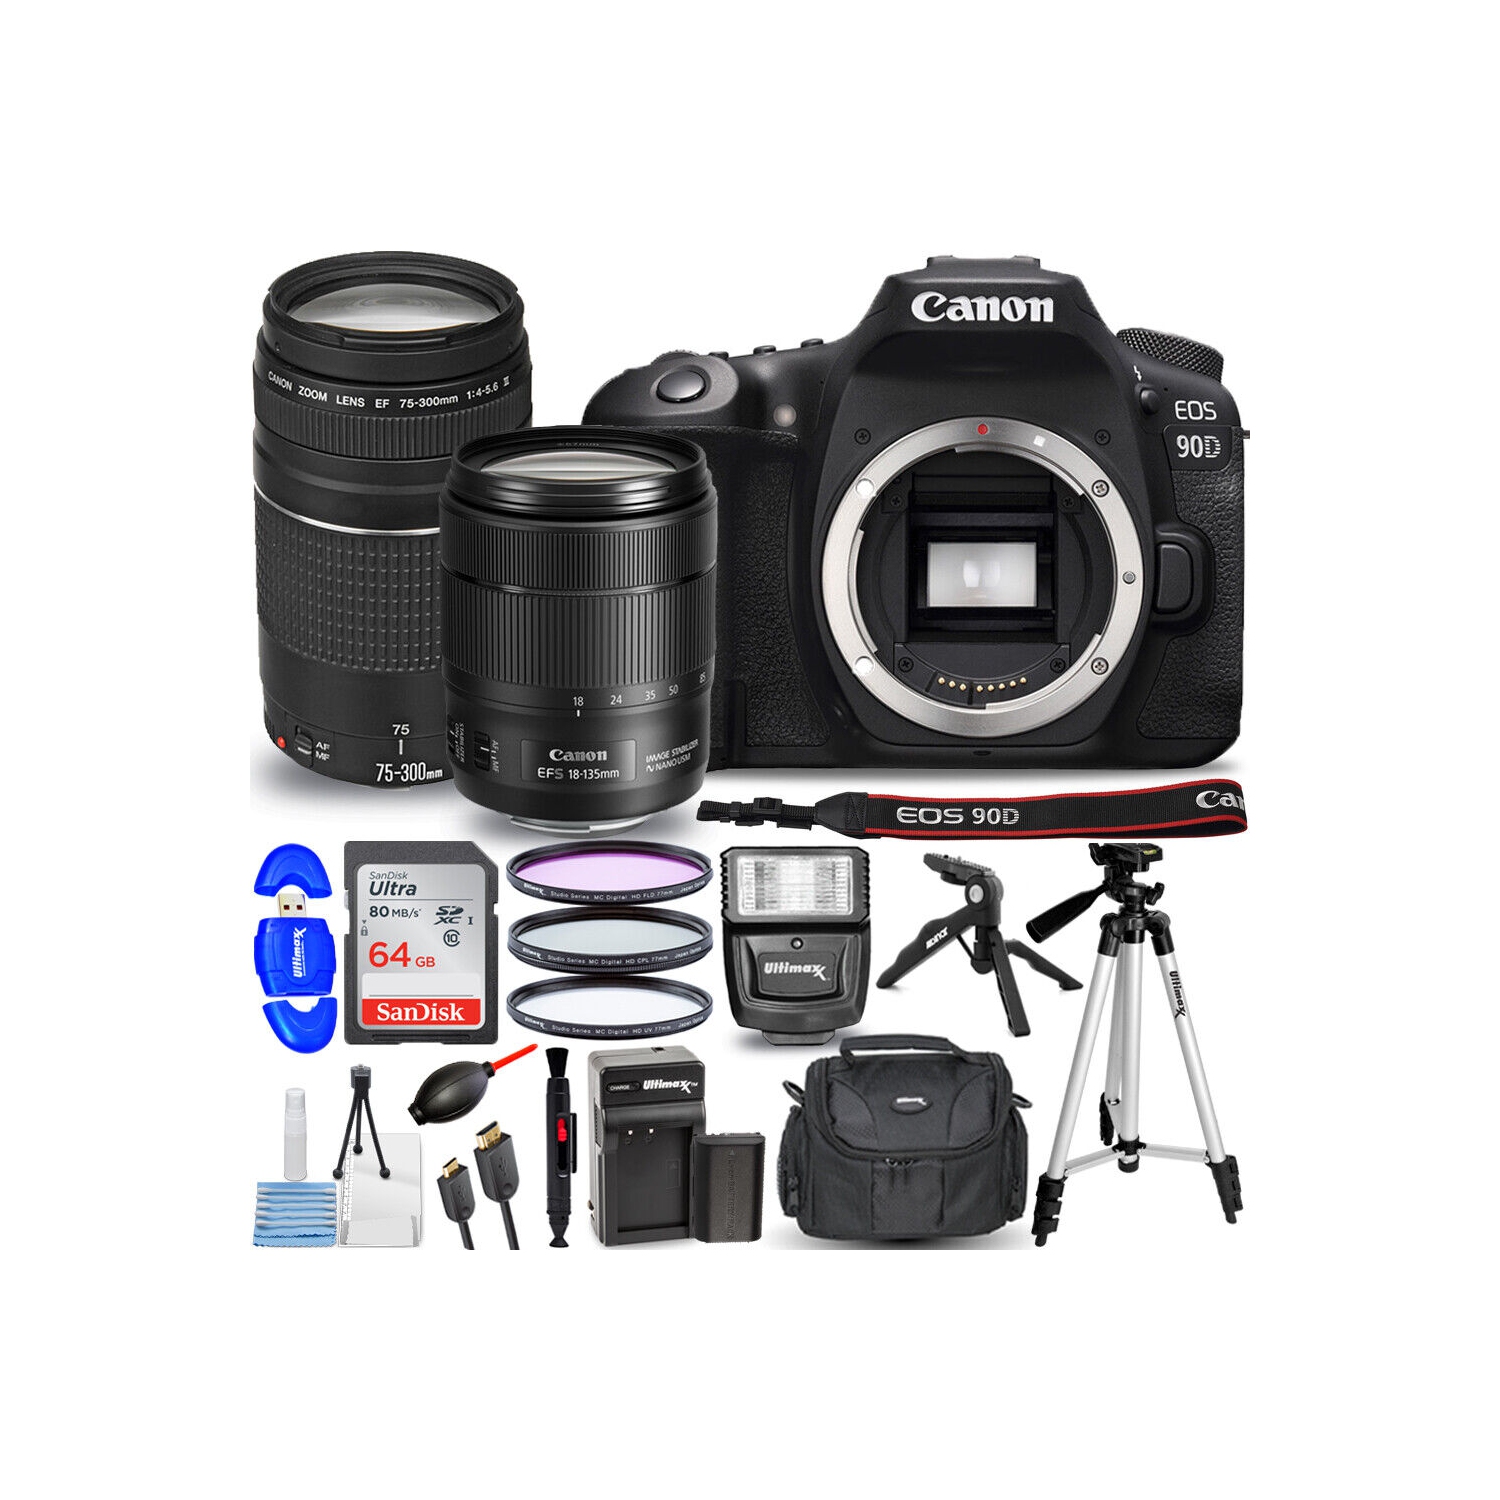 Canon EOS 90D DSLR with 18-135mm + 75-300mm + EXT BATT + Flash Top Value Bundle